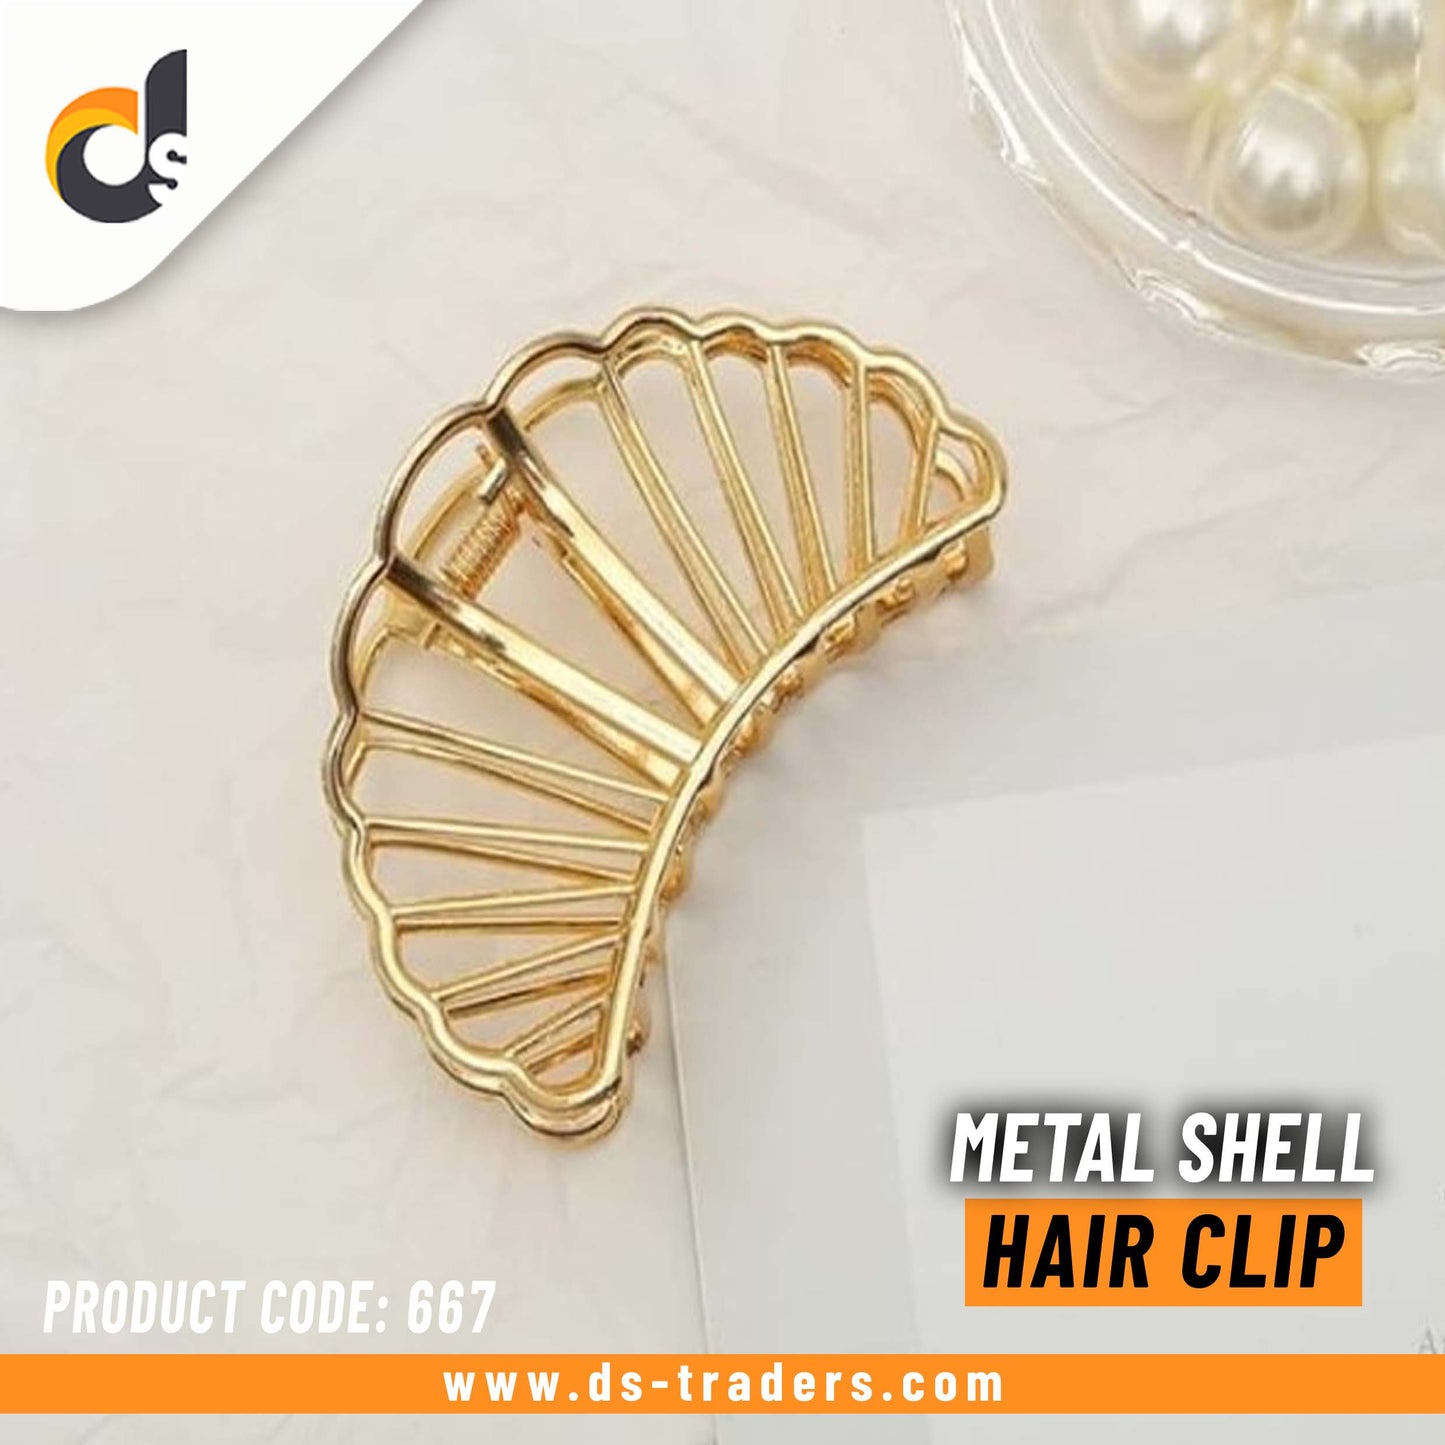 Metal Shell Hair Clip